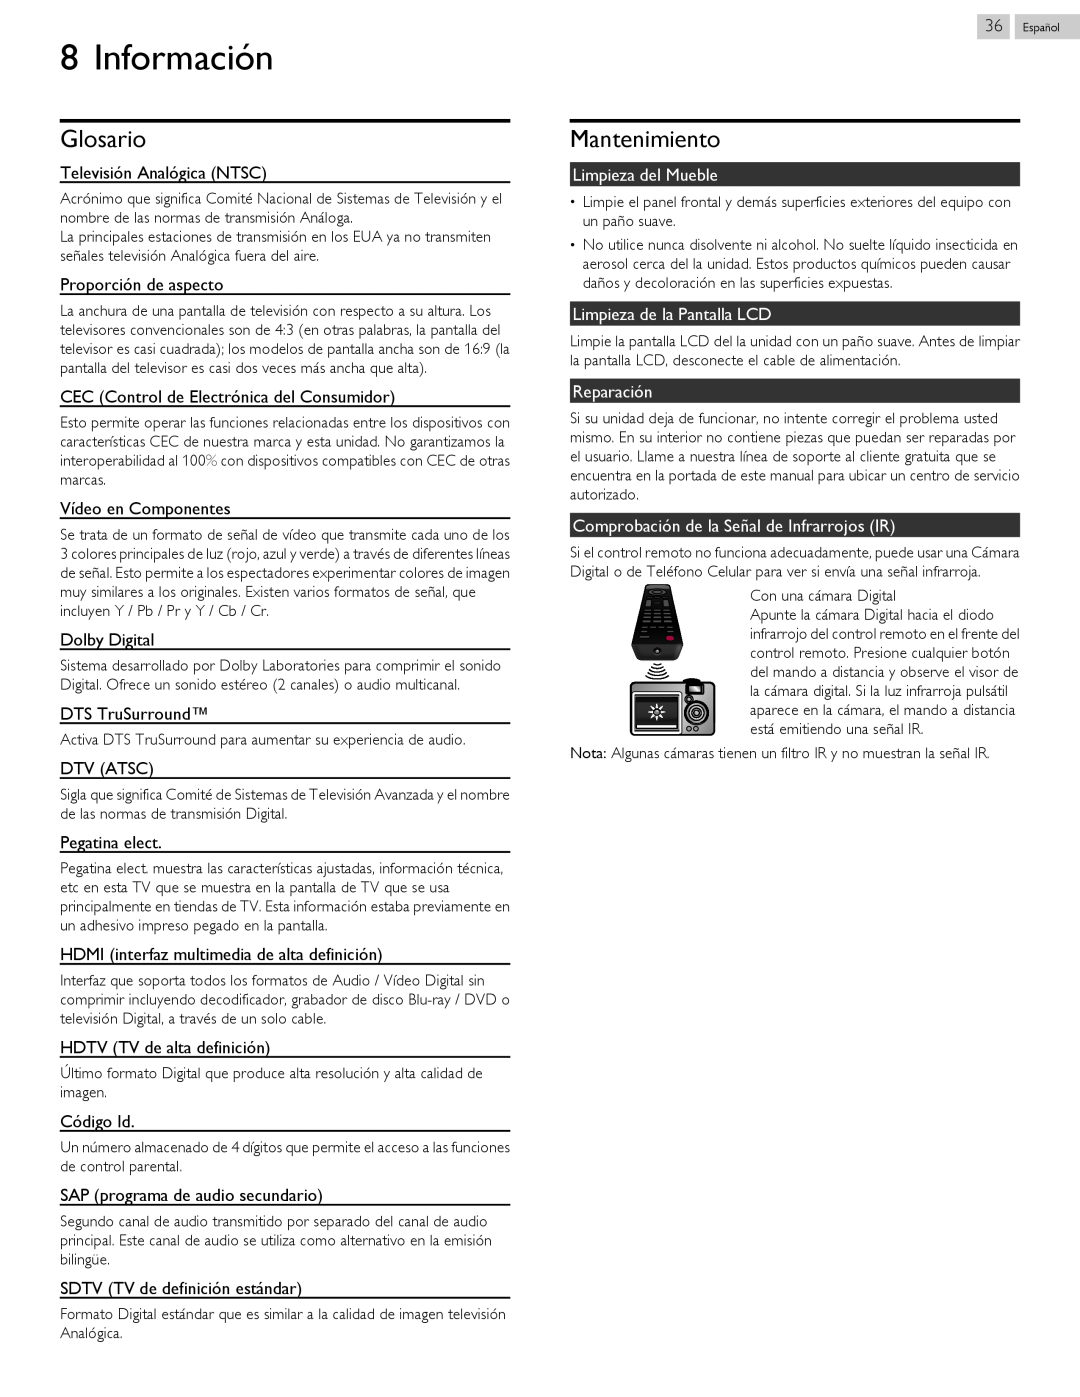 Philips 40PFL4709 user manual Información, Glosario, Mantenimiento 